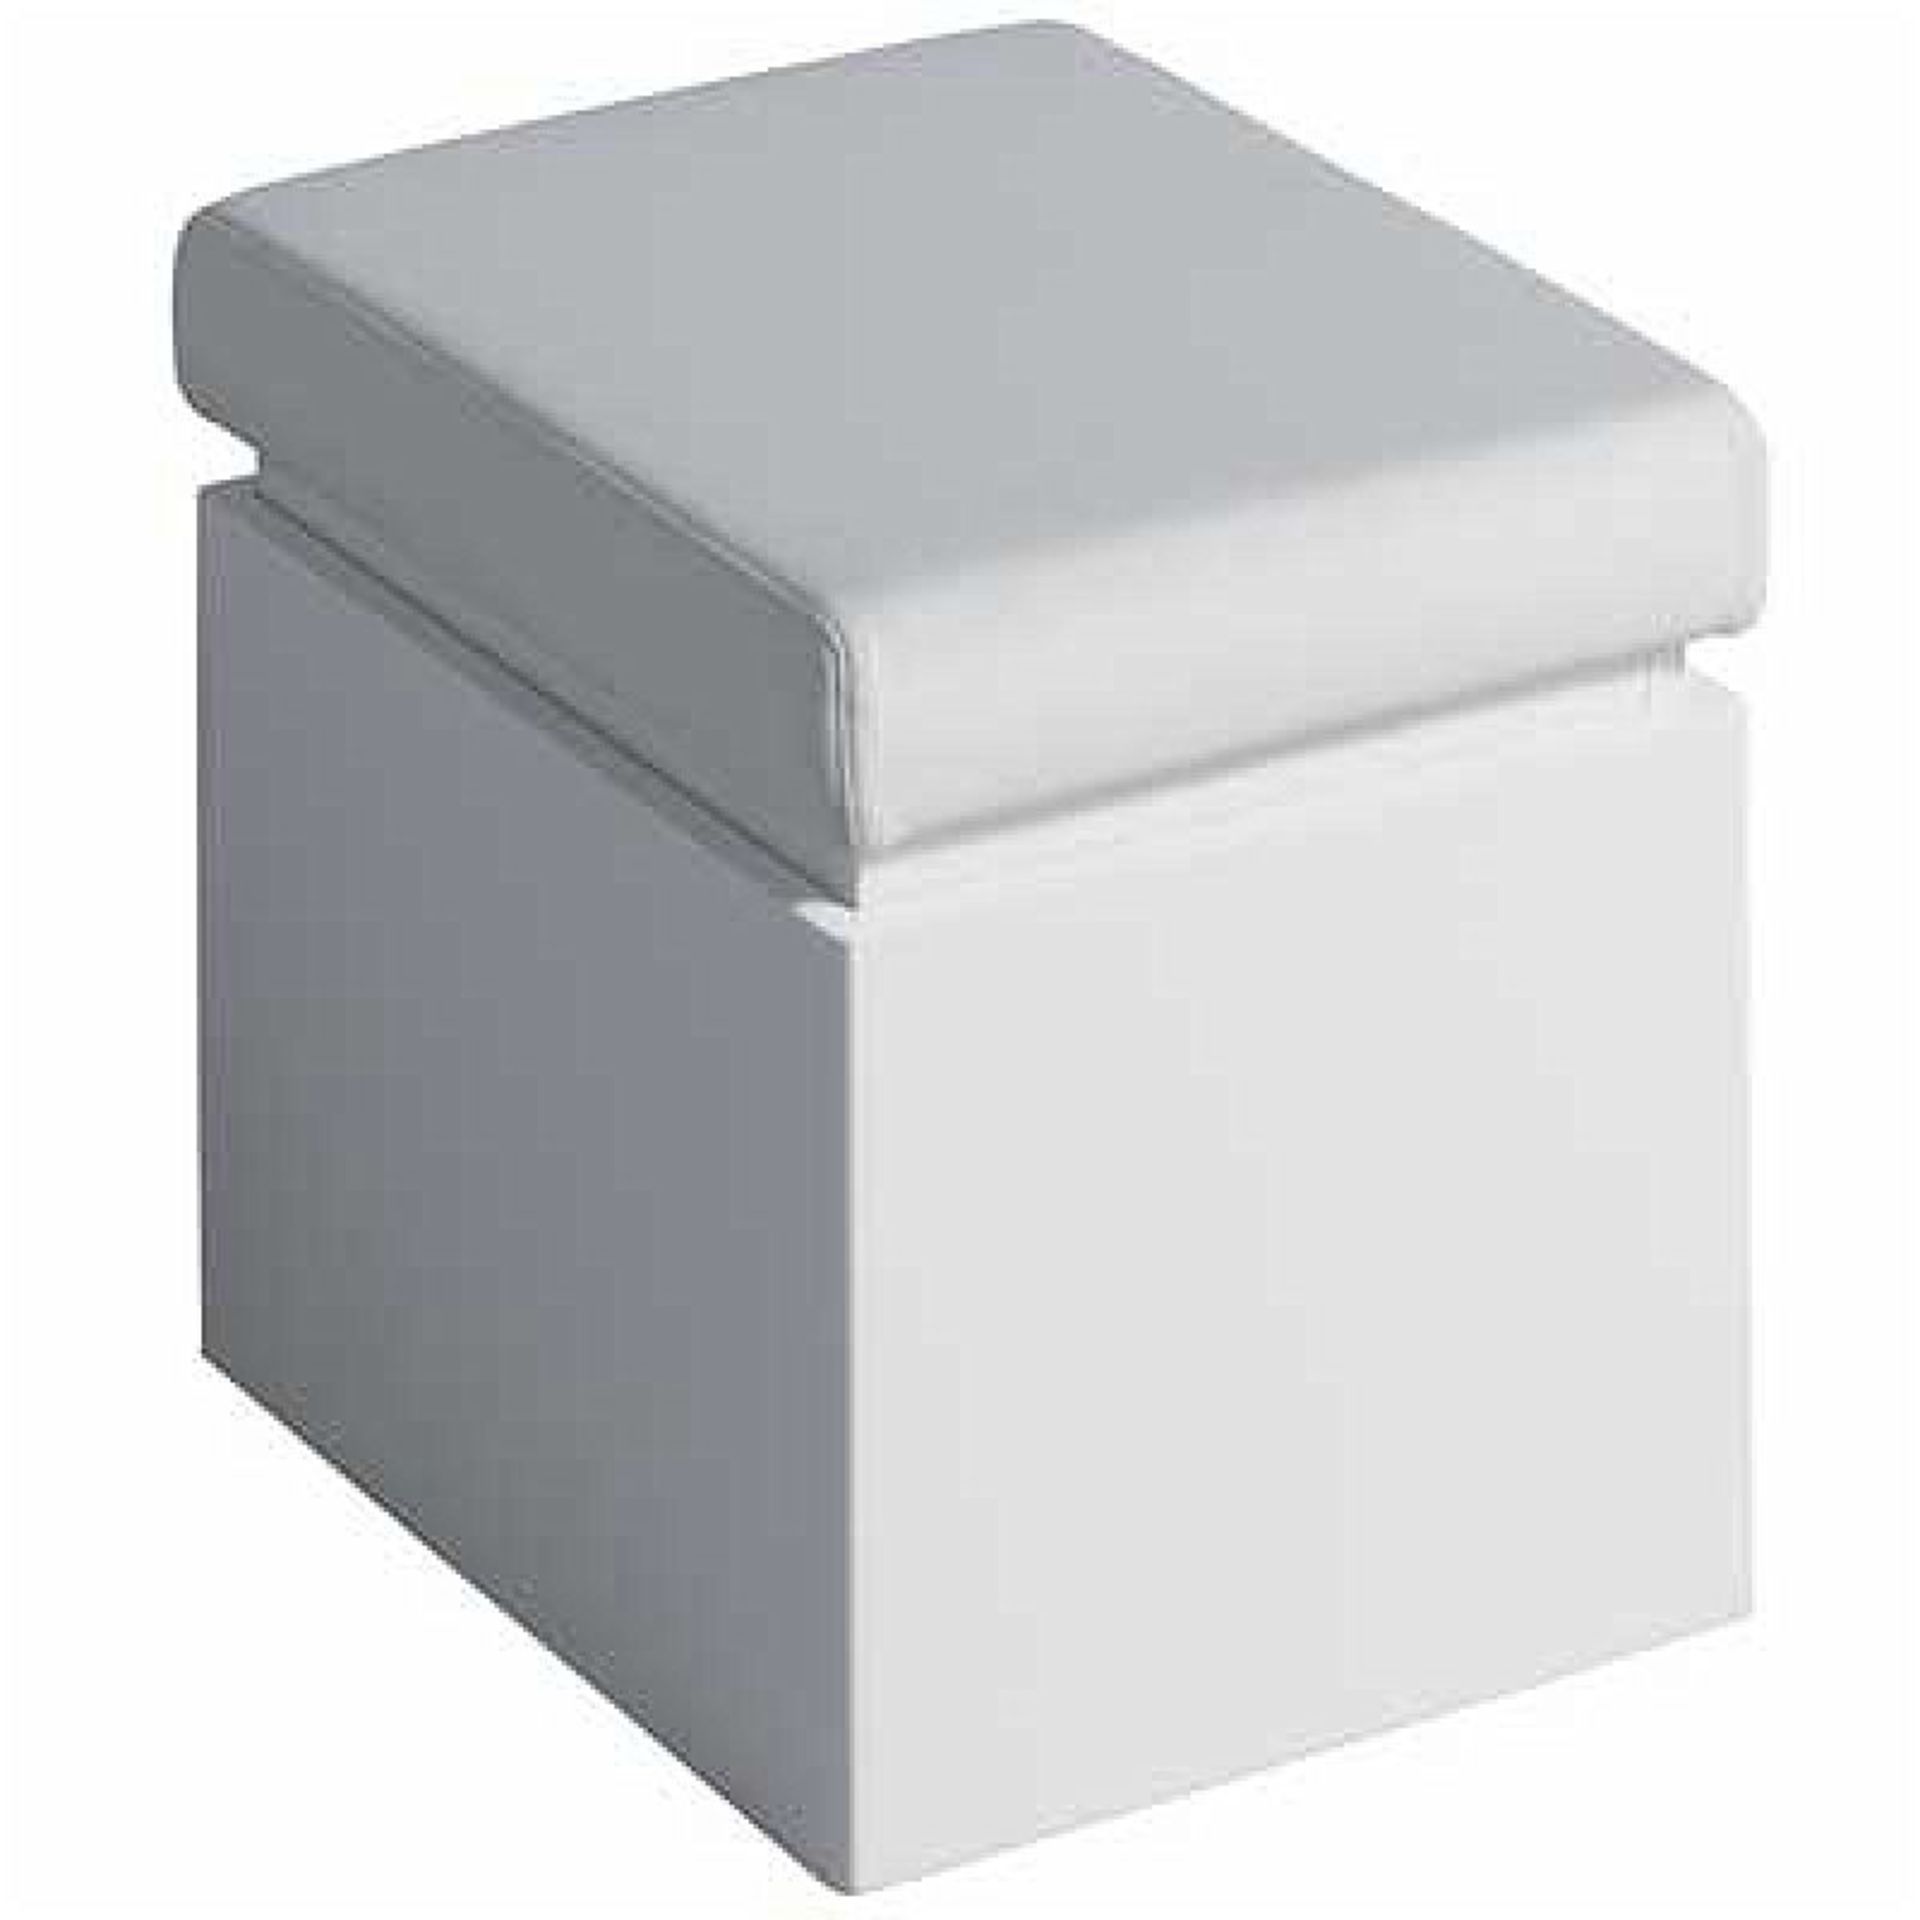 New Twyford White Bathroom Seat With Storage. RRP £254.99.Ta0901Wh. The Twyford White Bathro... - Bild 2 aus 2